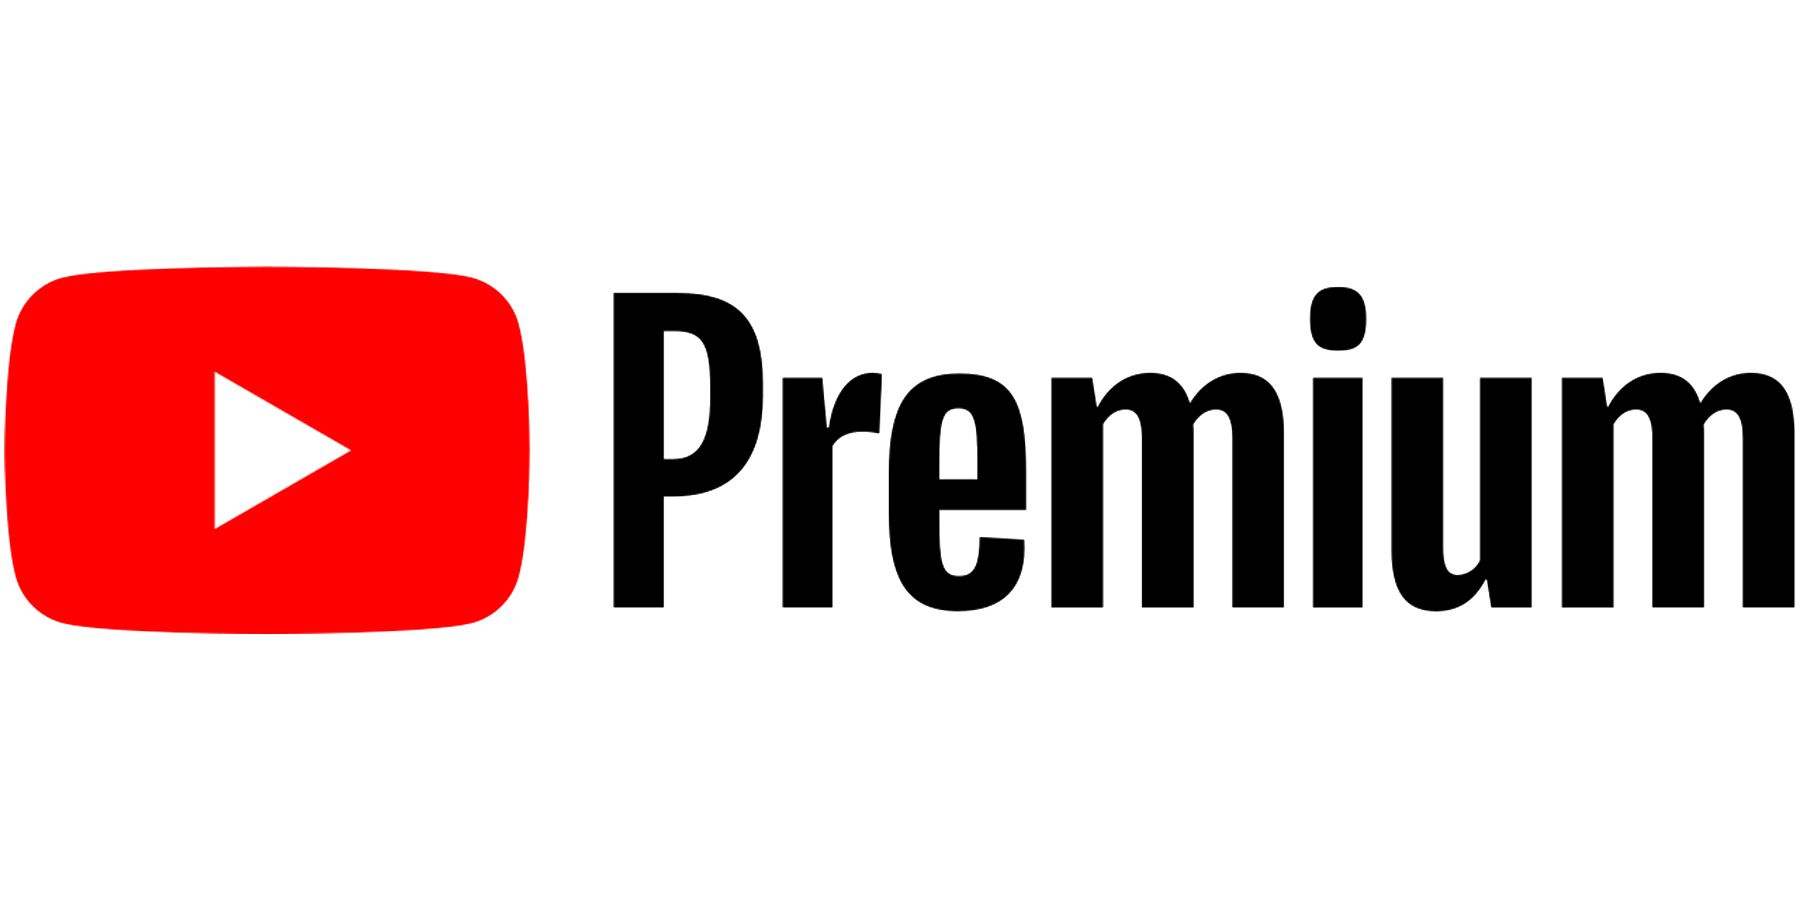 YouTube Premium logo on white